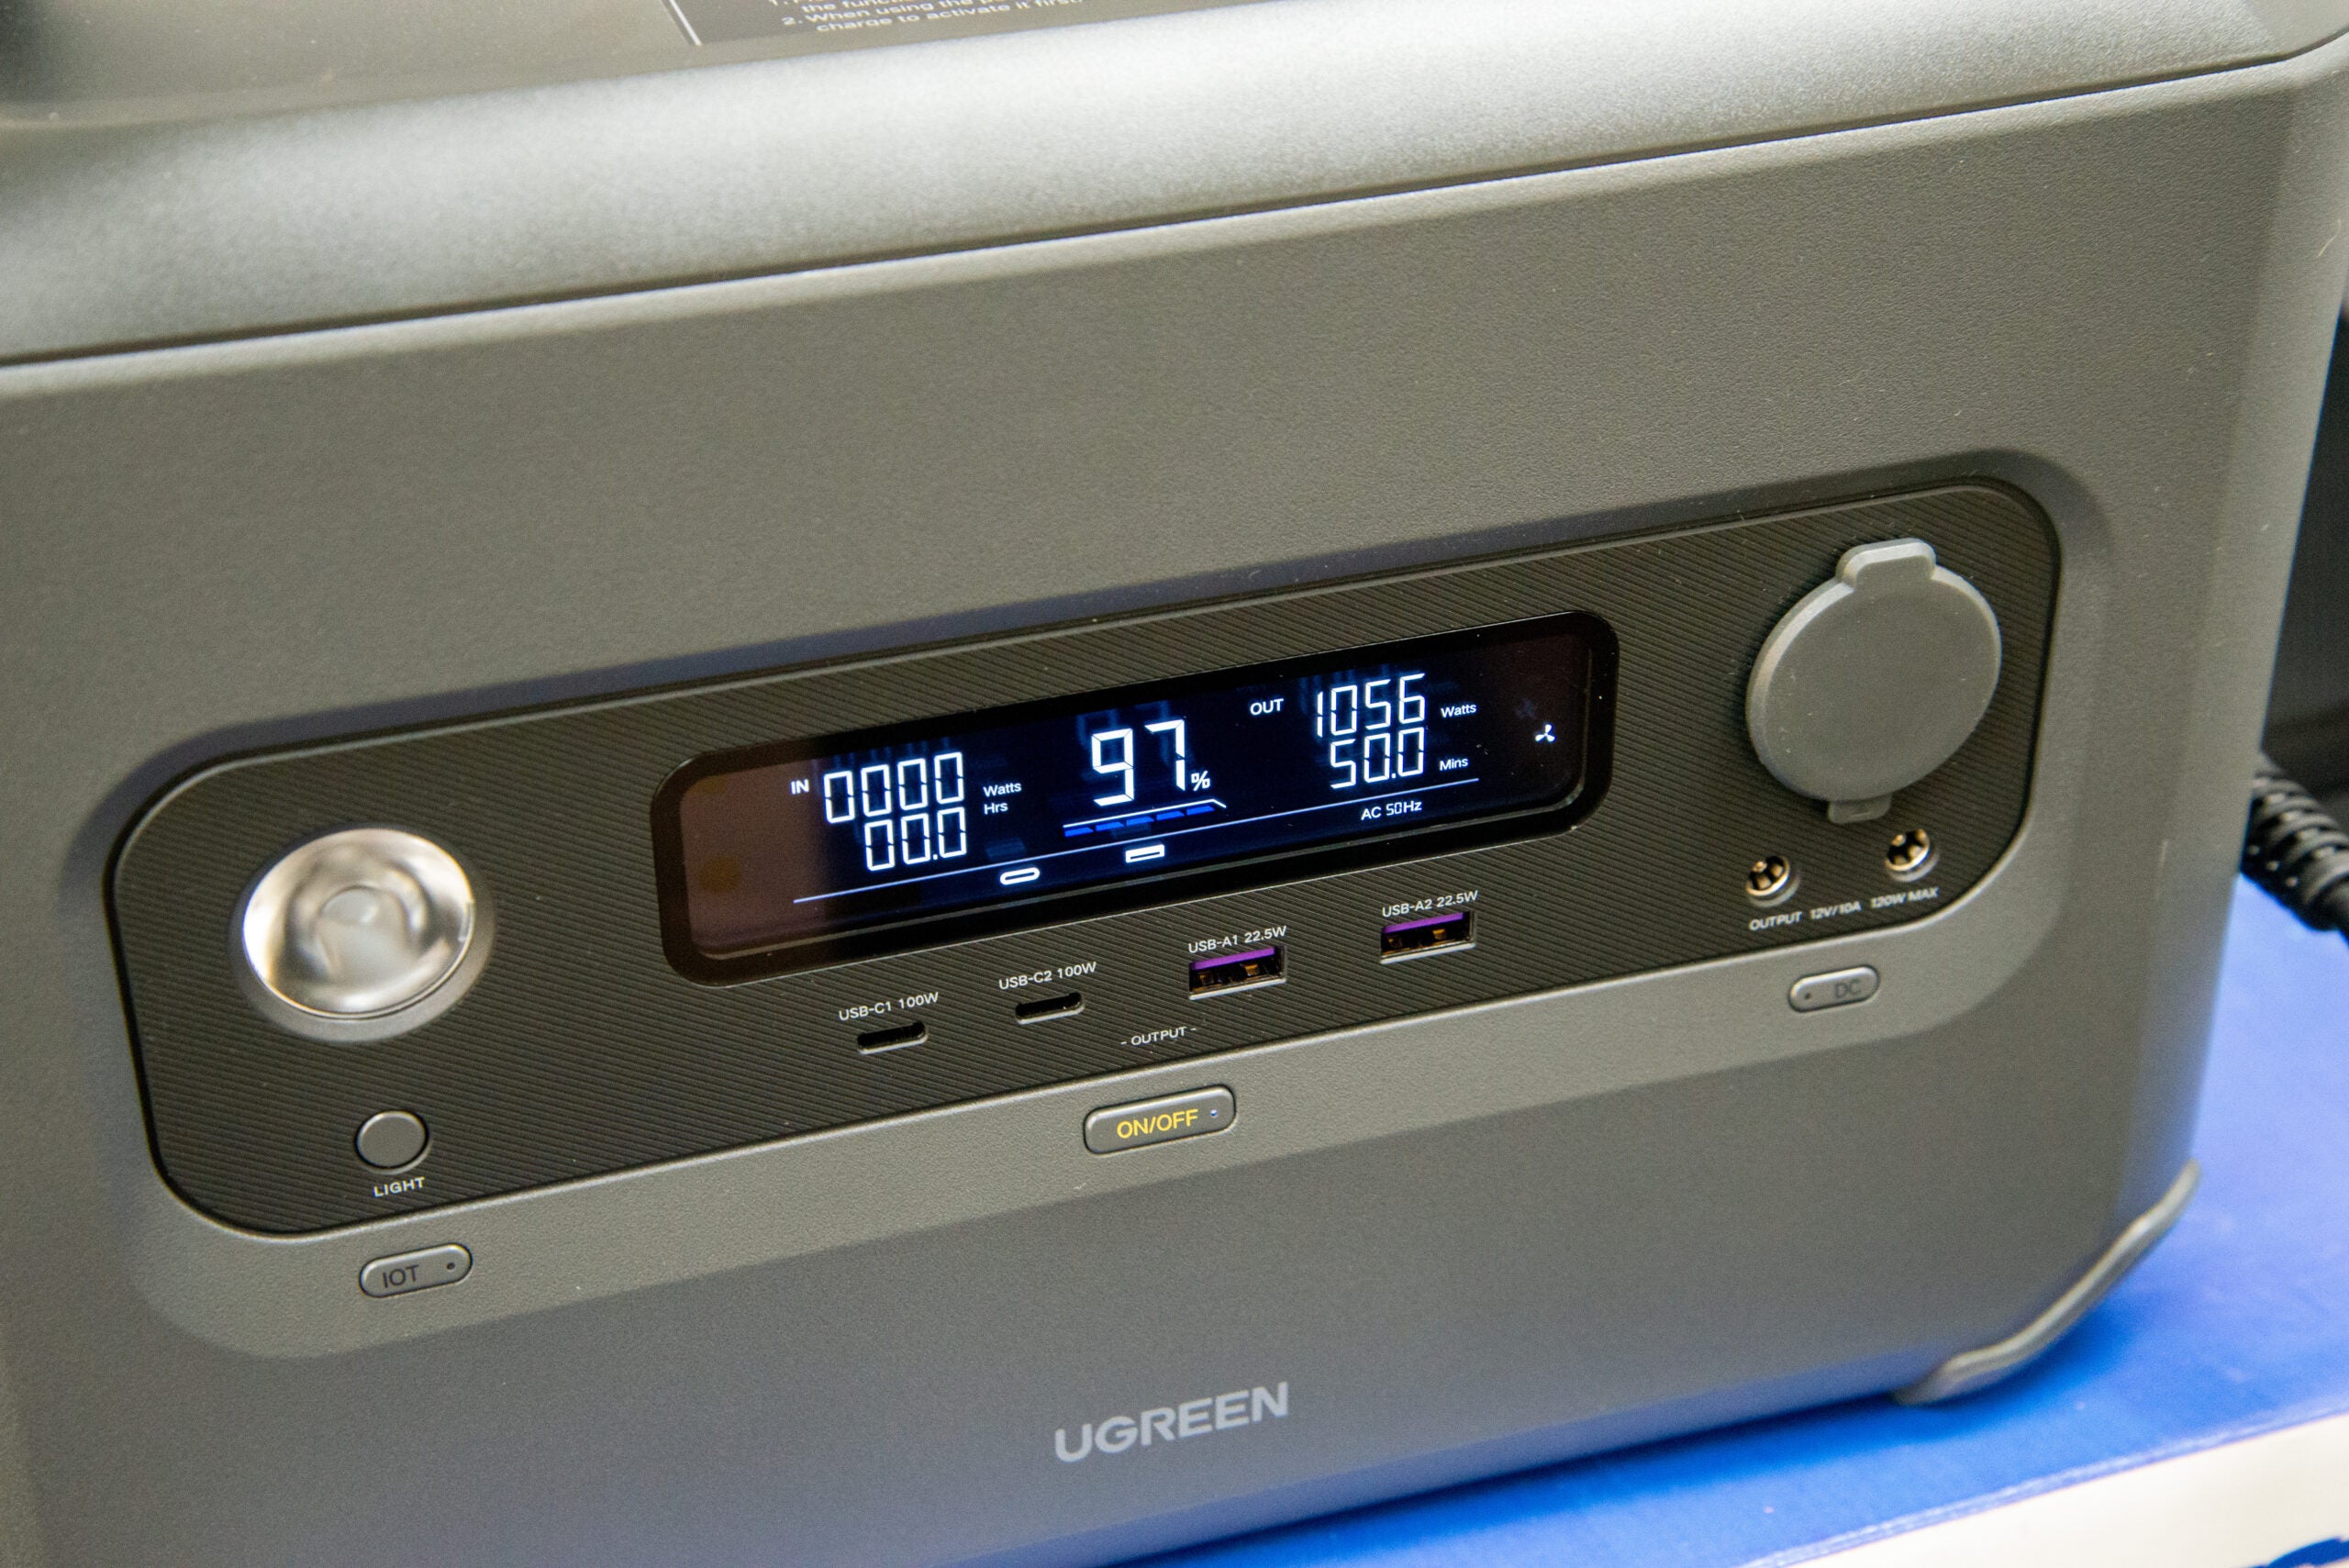 Pantalla UGreen PowerRoam GS1200 que muestra la salida actual